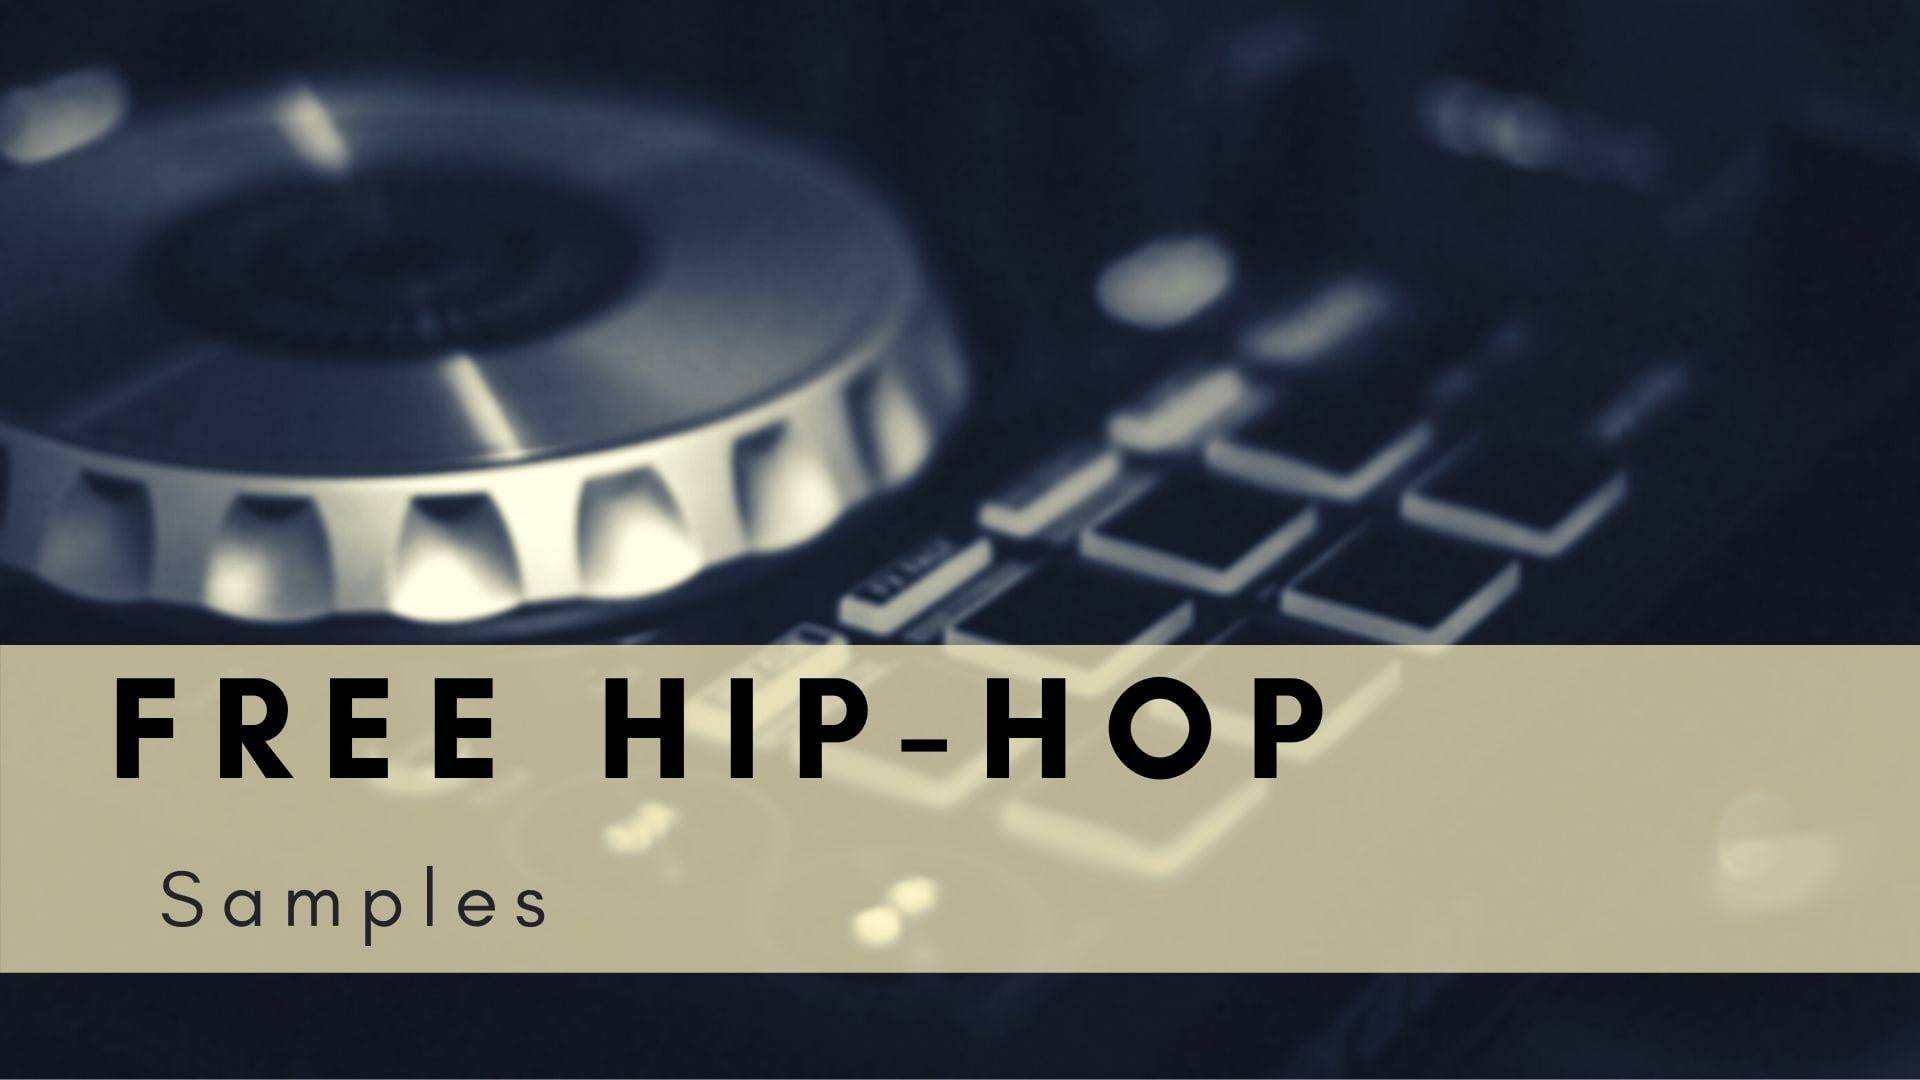 Cubase Hip Hop Sample Packs Digital FLStudio Pro Tools,... WAV 